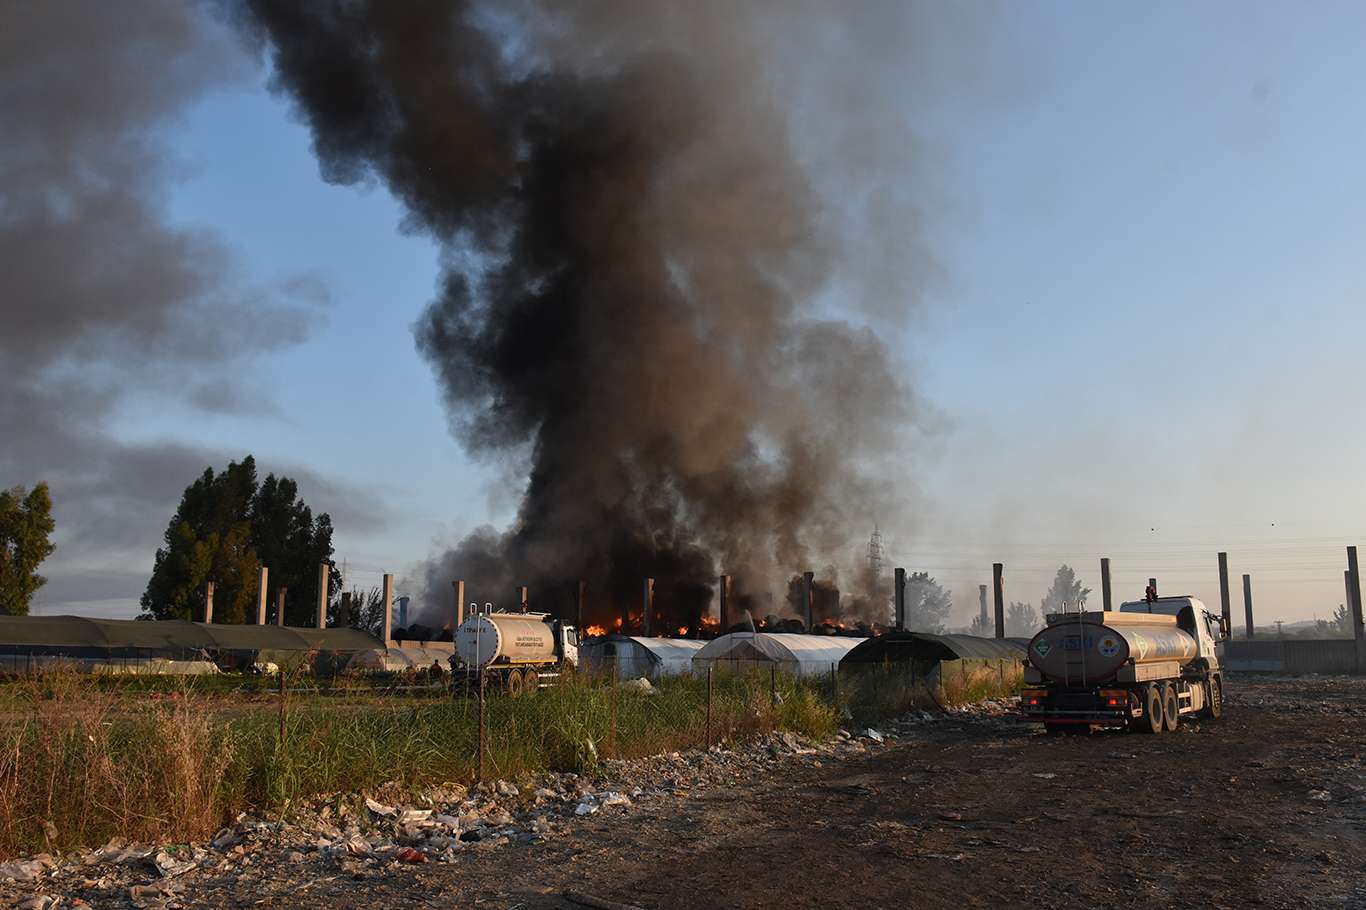 Adana'da geri dönüşüm tesisinin bahçesinde yangın